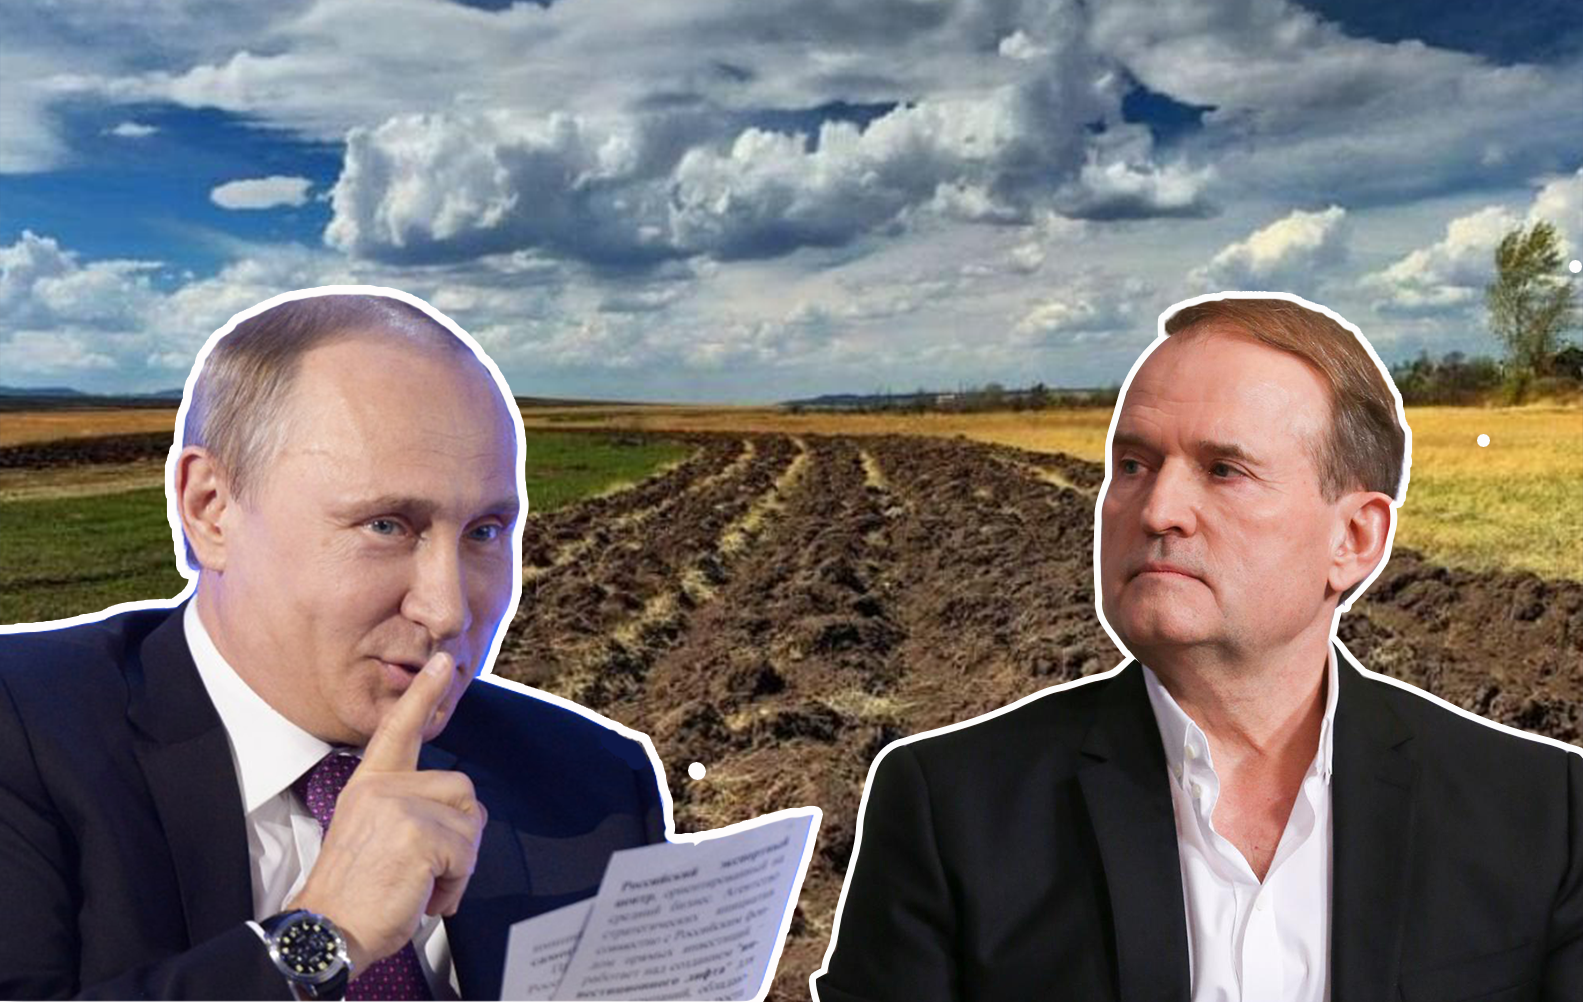 Плохой план Путина, или Кто и почему создает мифы, что россияне скупят украинскую землю - 20 серпня 2019 - 24 Канал